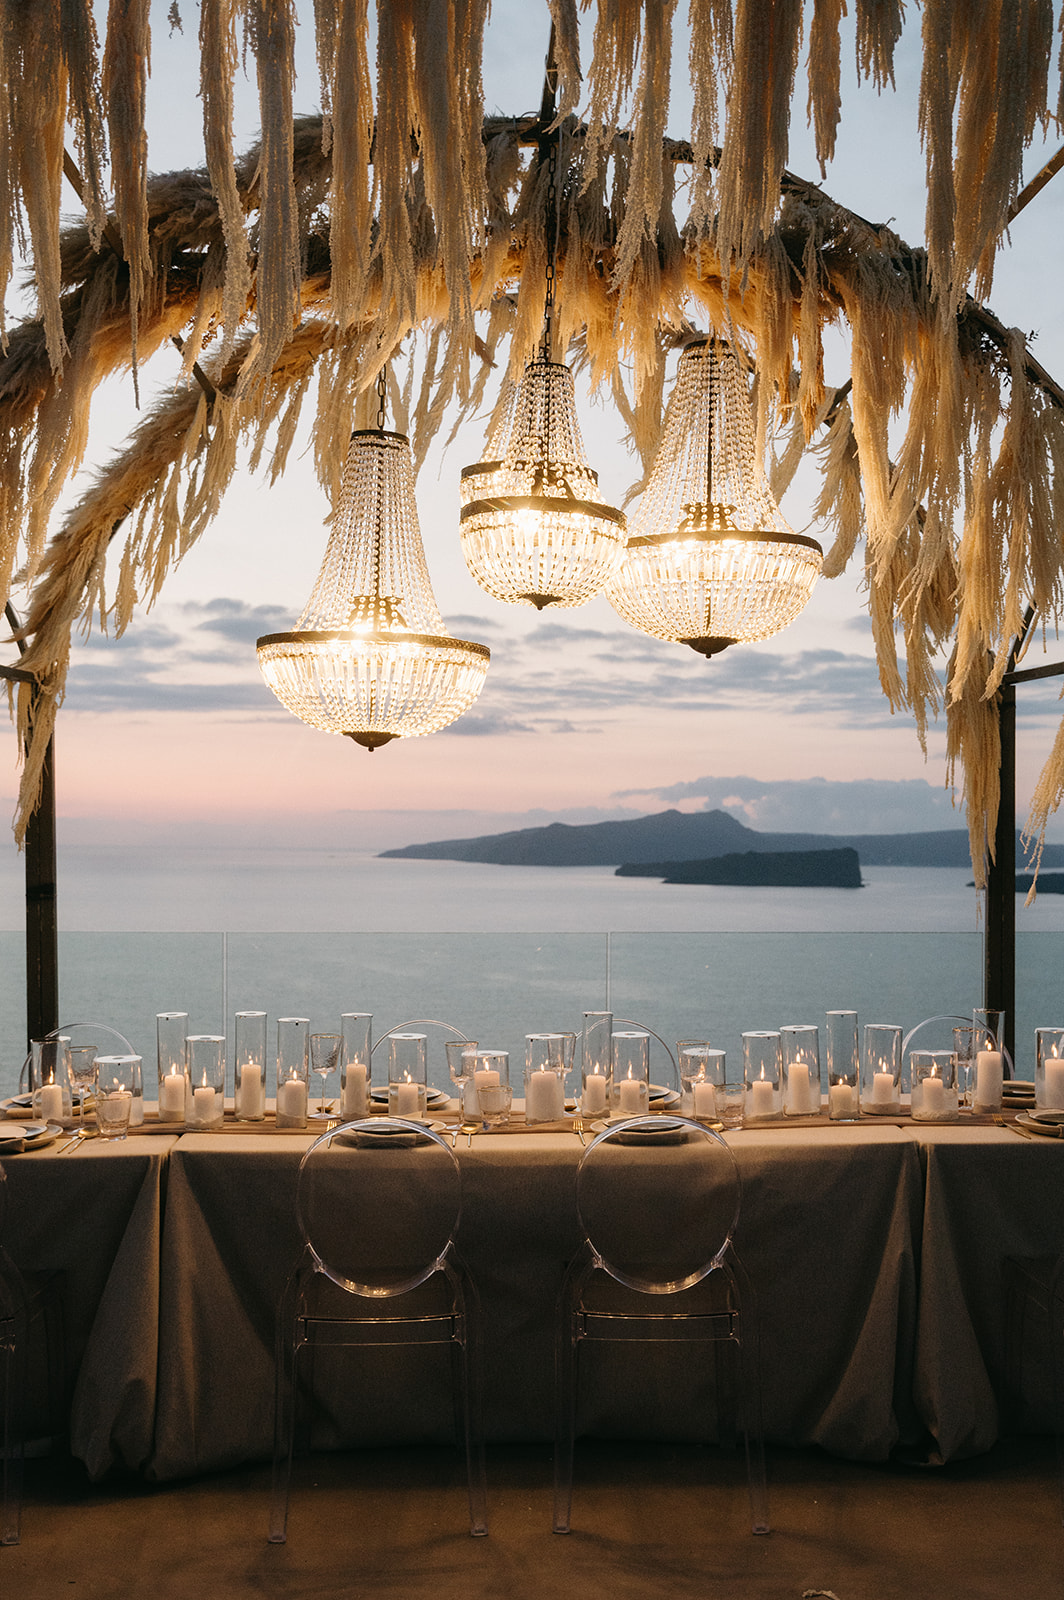 dreamiest wedding decoration inspiration greece